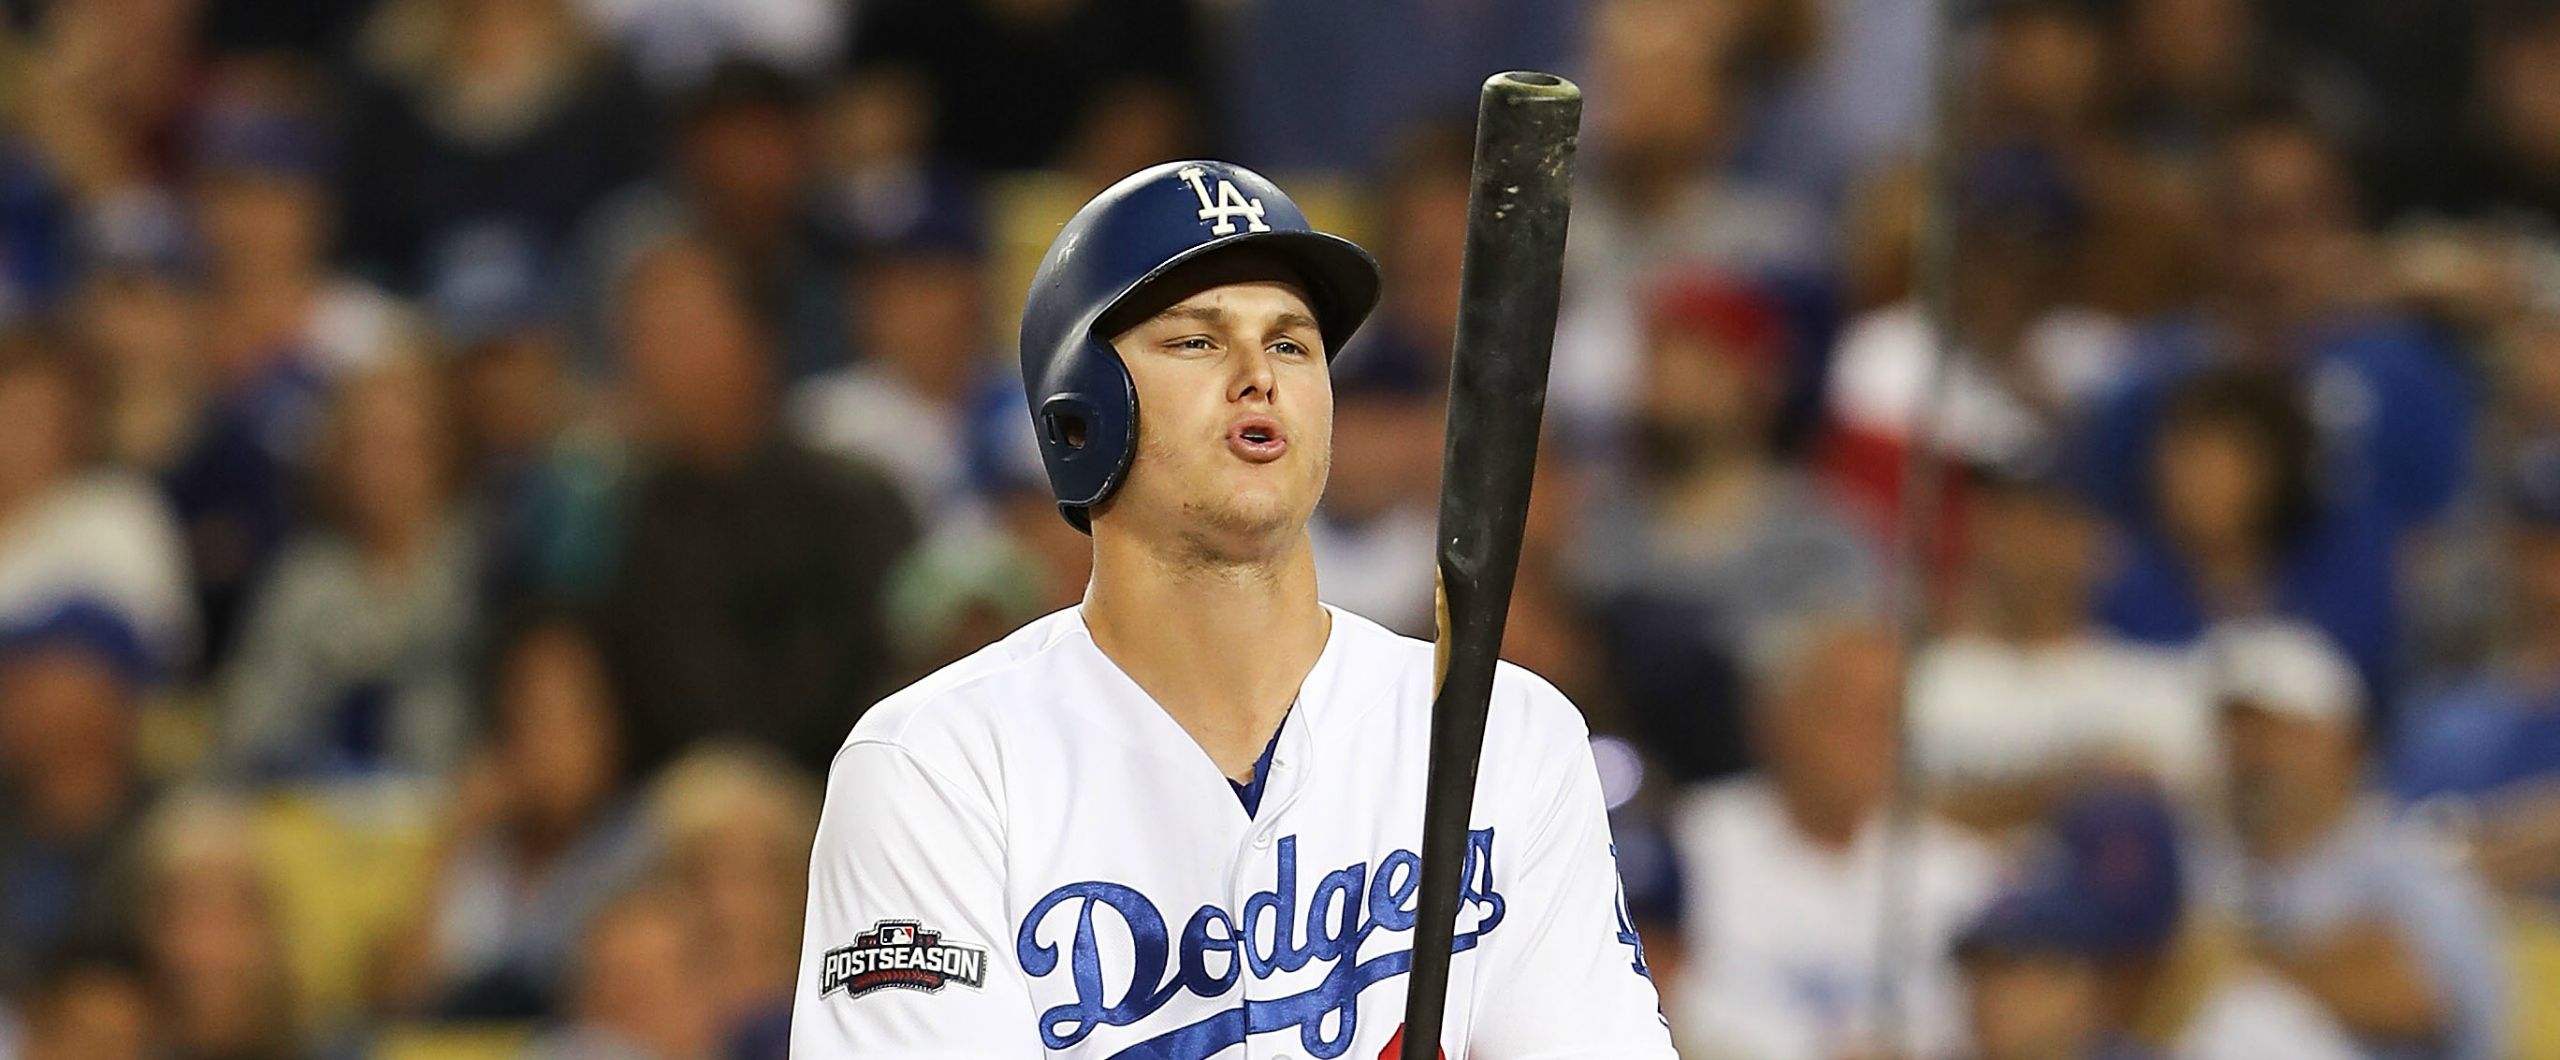 Meet Joc Pederson, the Jewish rookie powering L.A. Dodgers' run to